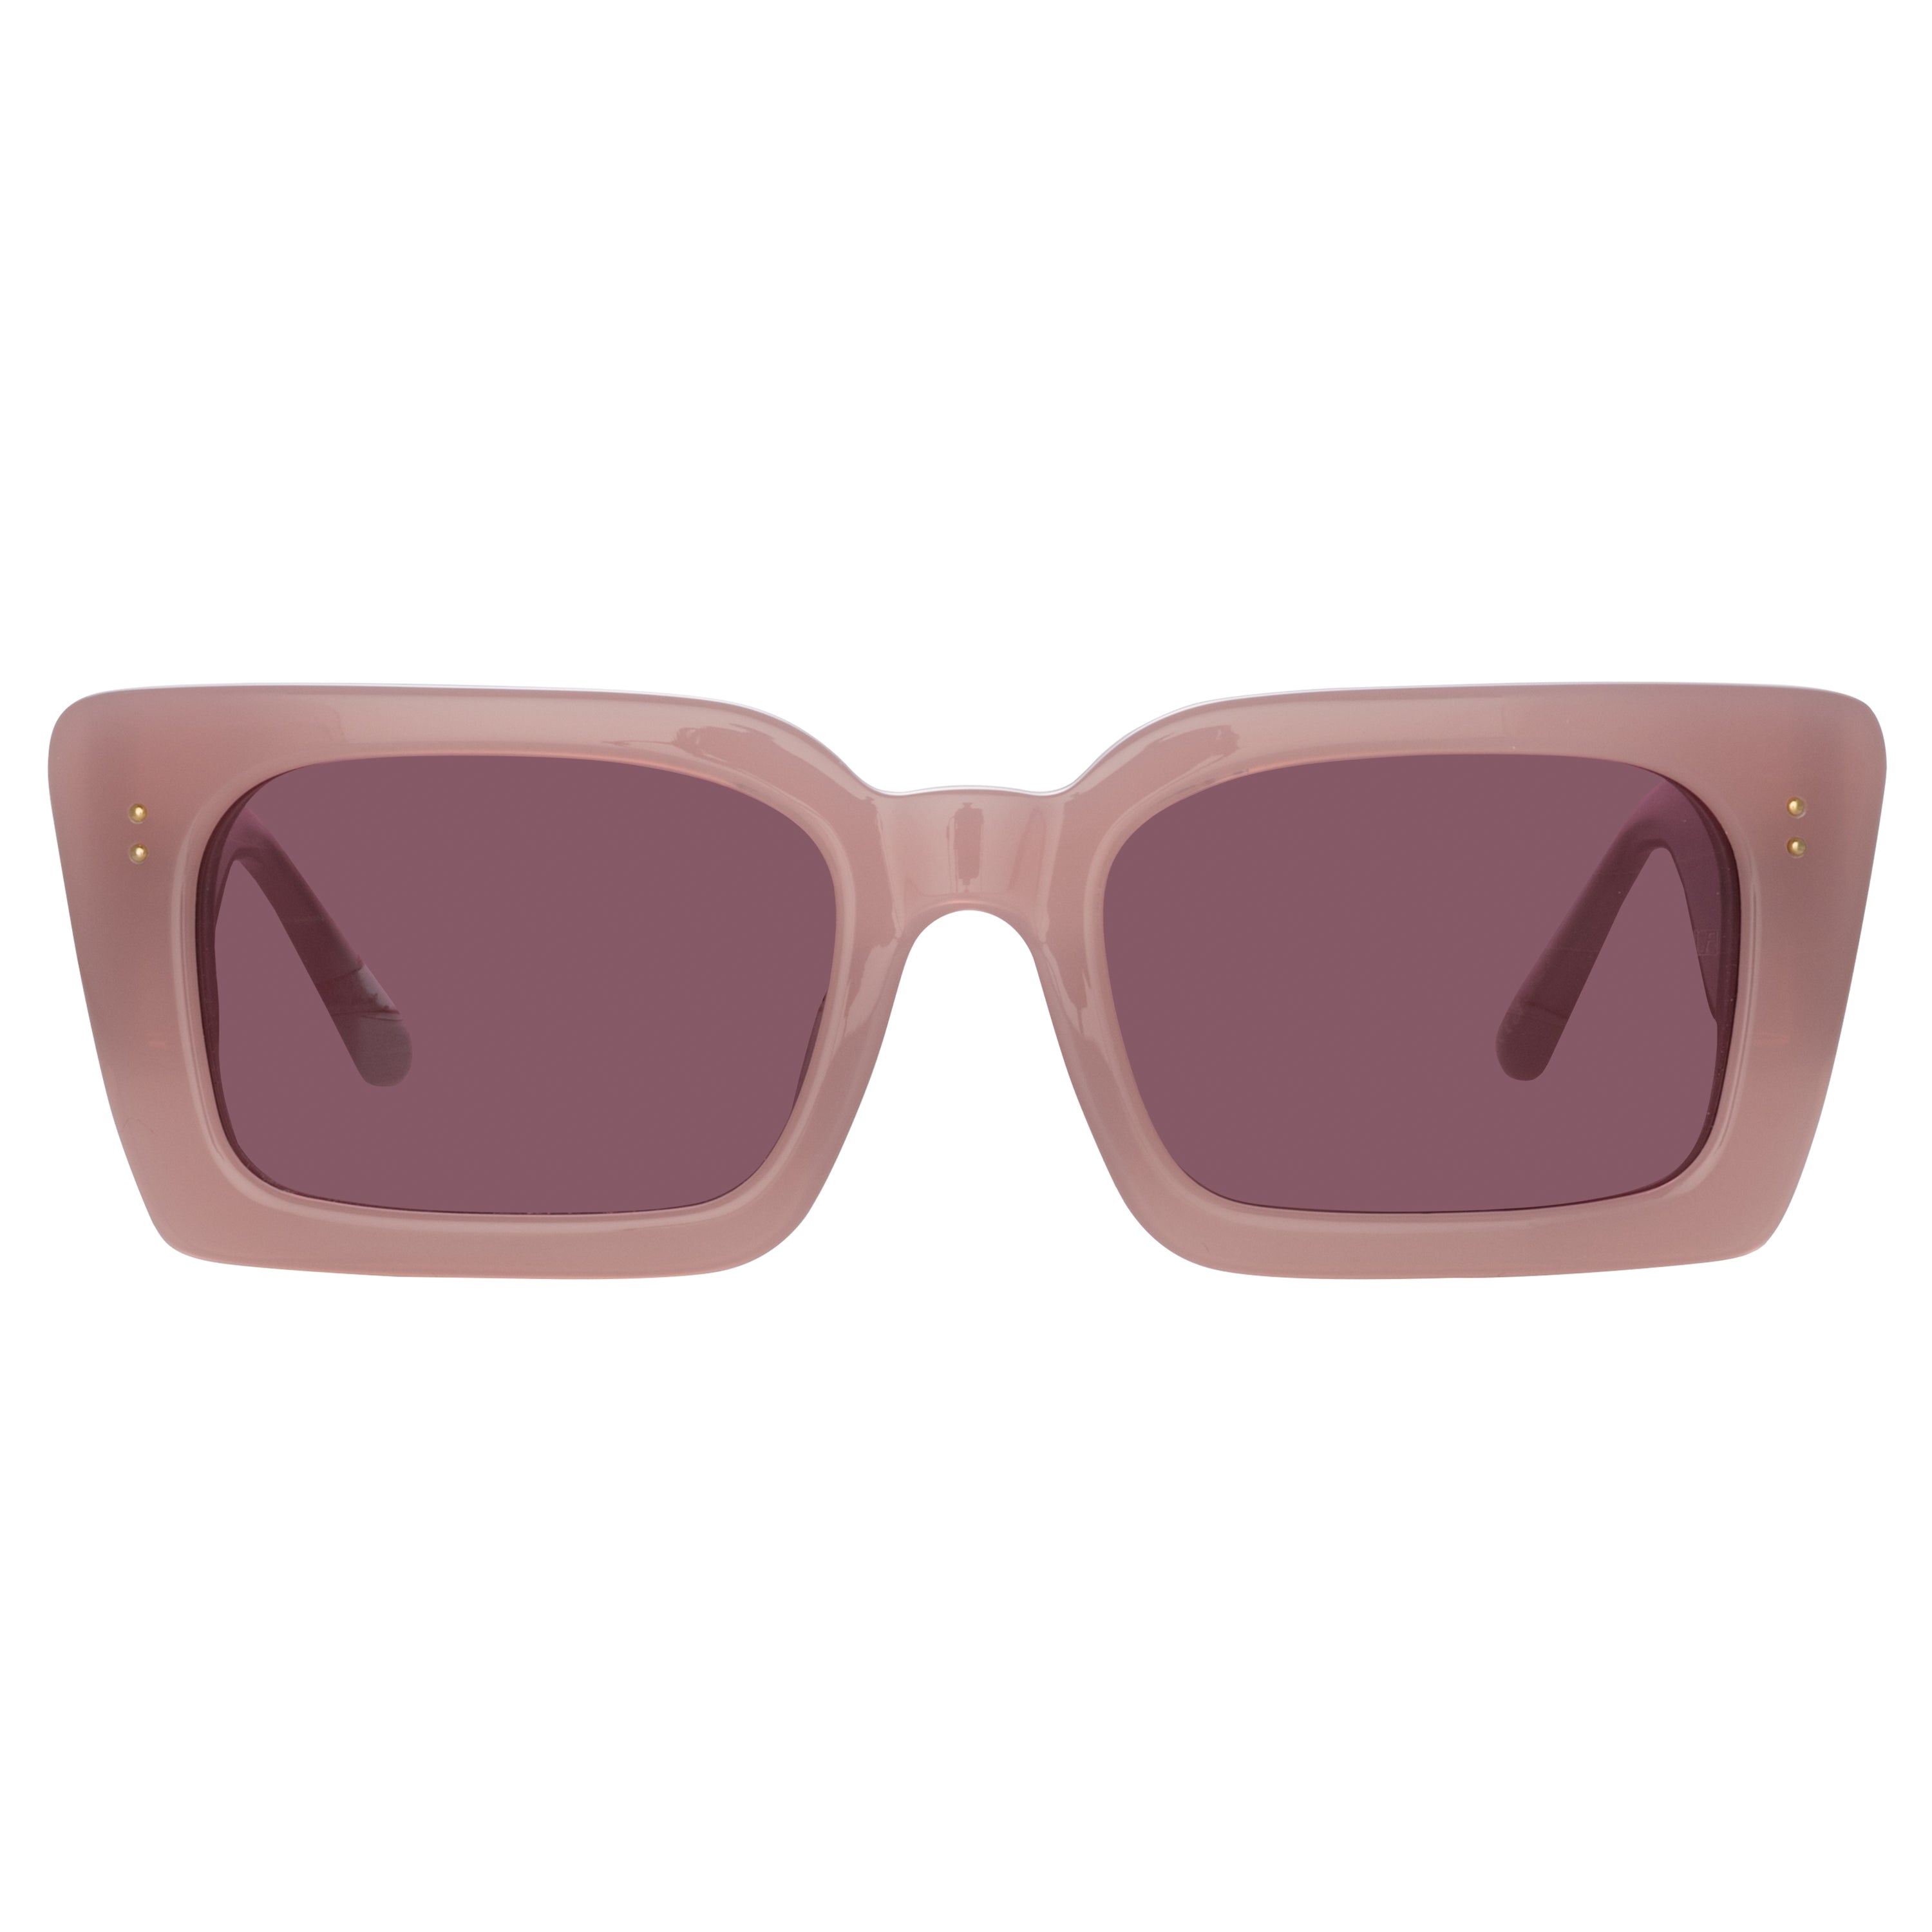 Nieve Rectangular Sunglasses in Lilac